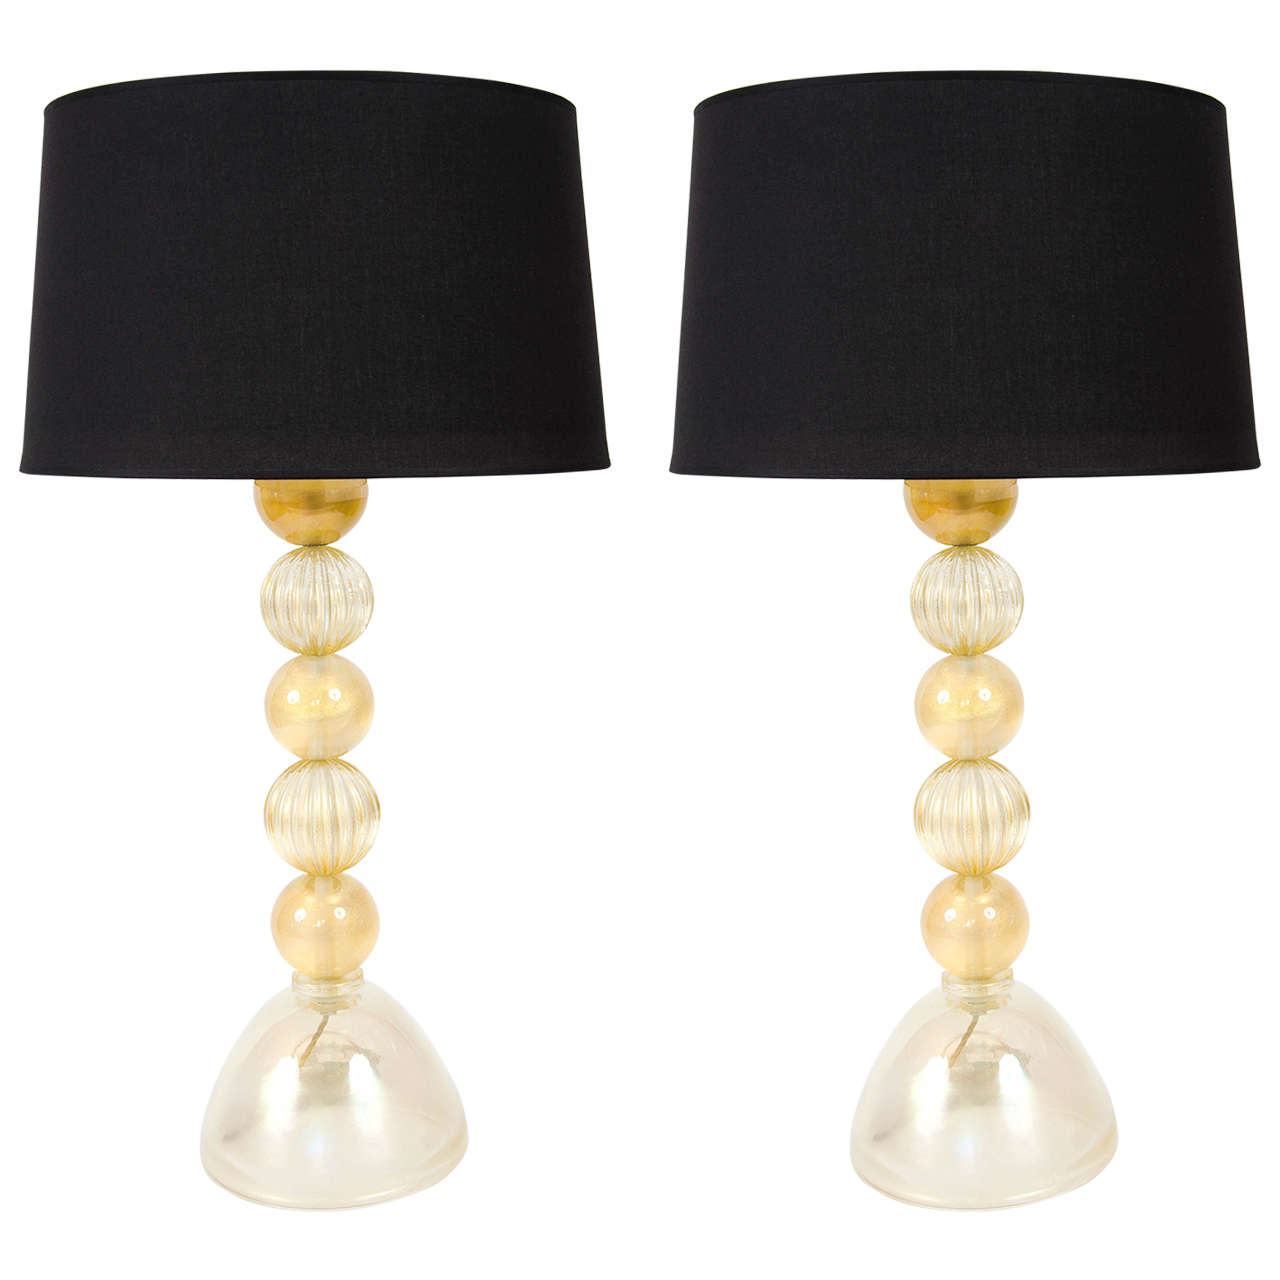 Pair of 1950s Murano Ball Lamps